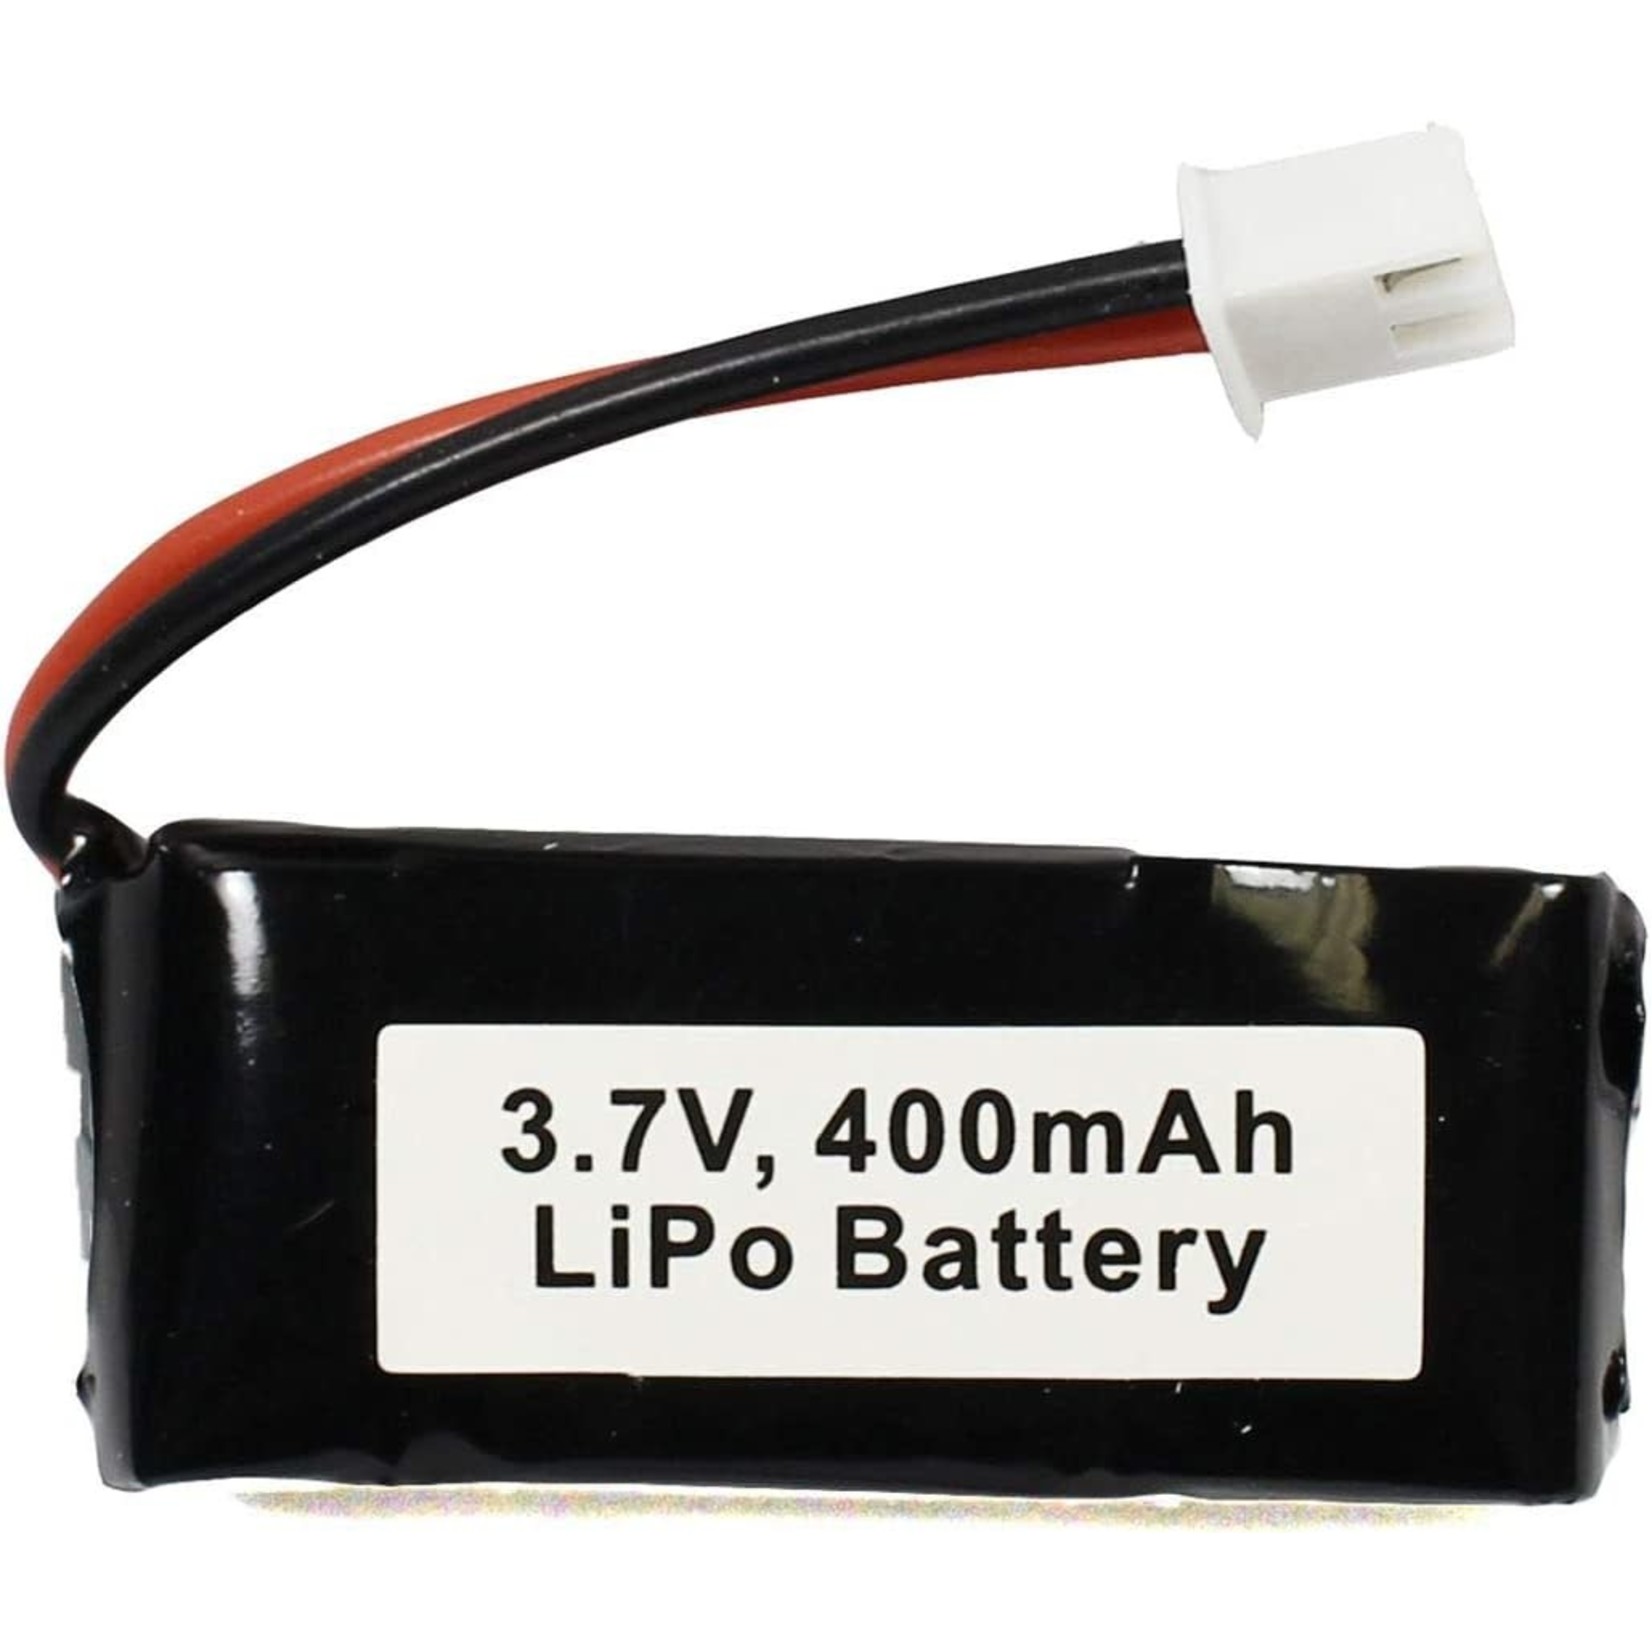 Rage RC Rage RC Mini-Q Lipo Battery (3.7V/400mAh) #RGRC2436